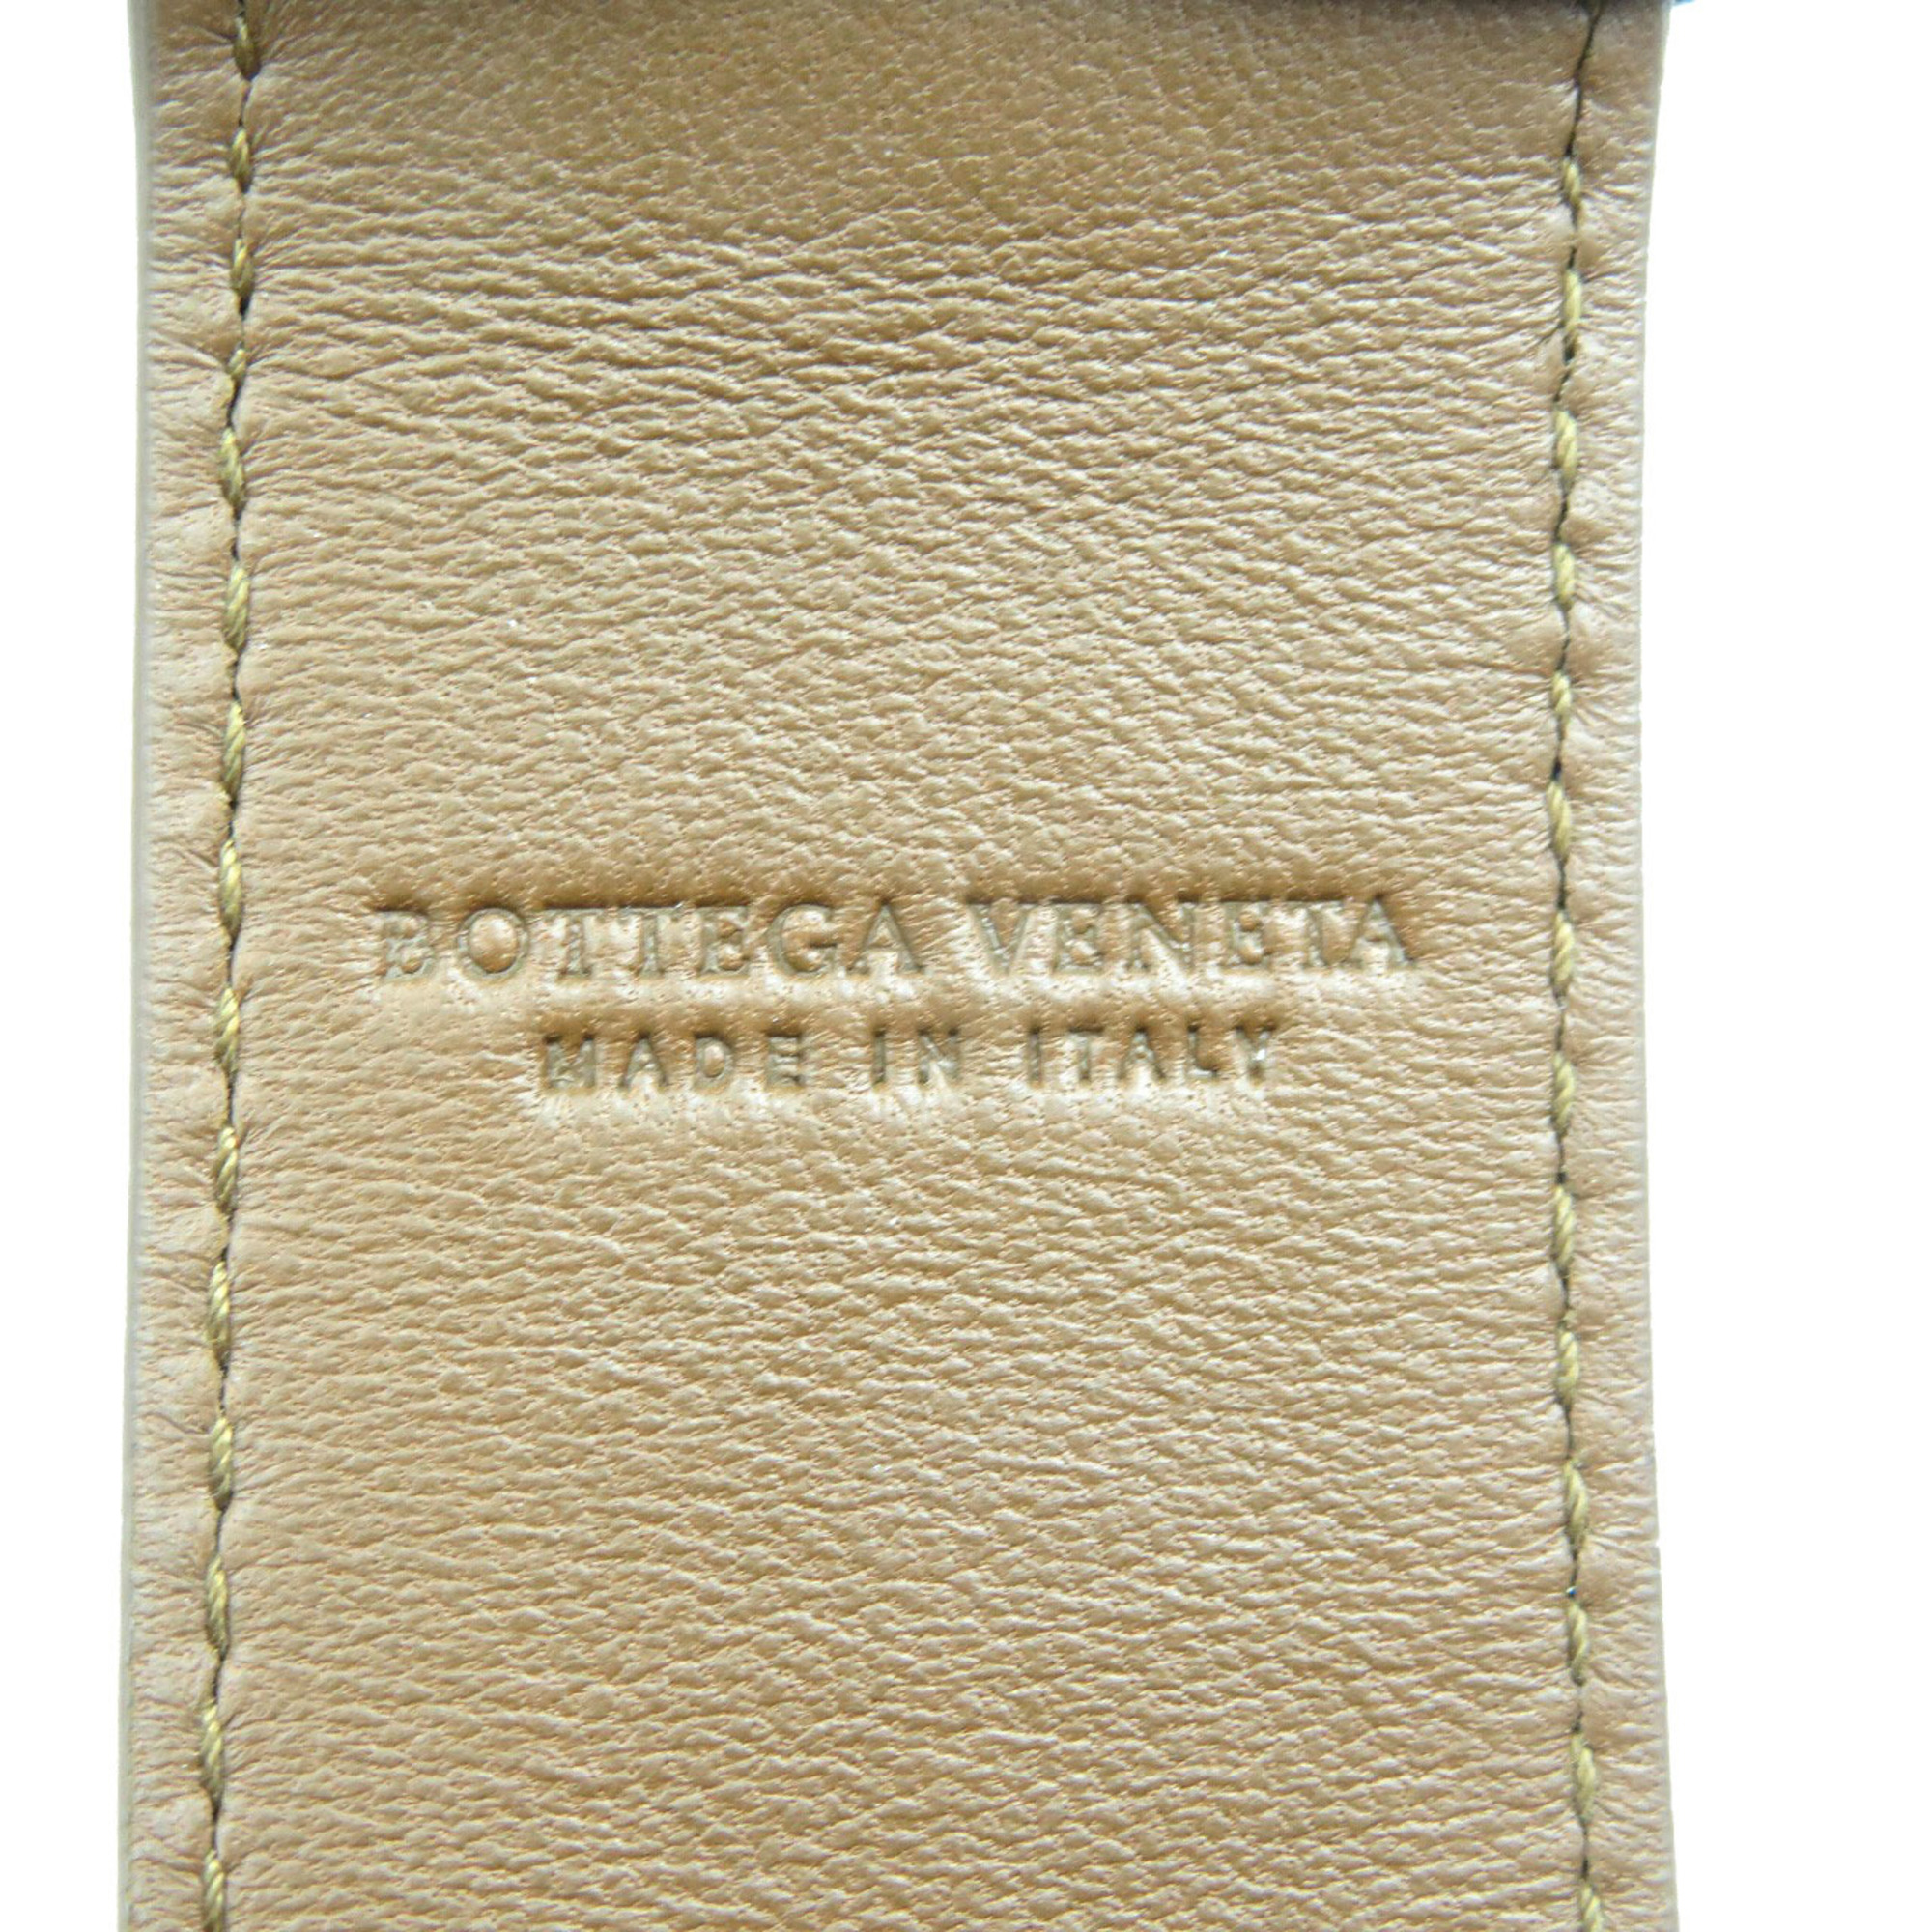 Bottega Veneta Intrecciato Leather Brown Shoulder Strap 0056BOTTEGA VENETA